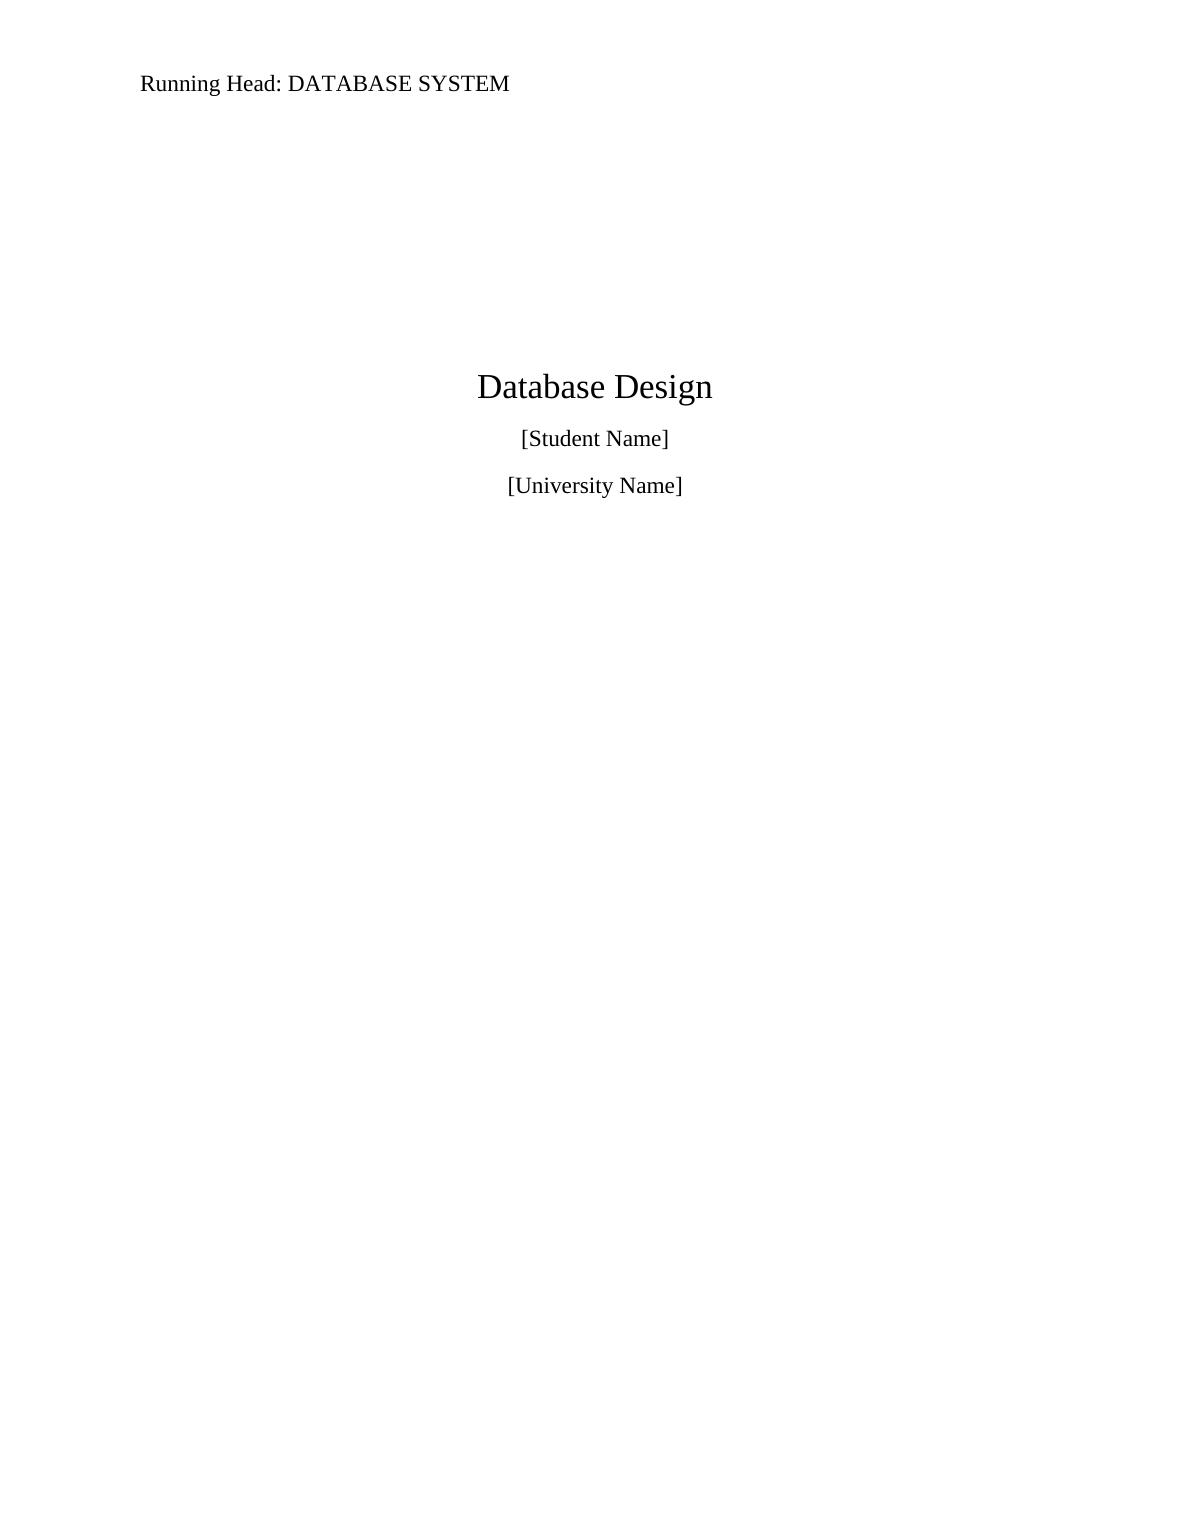 Database Design: Assignment_1